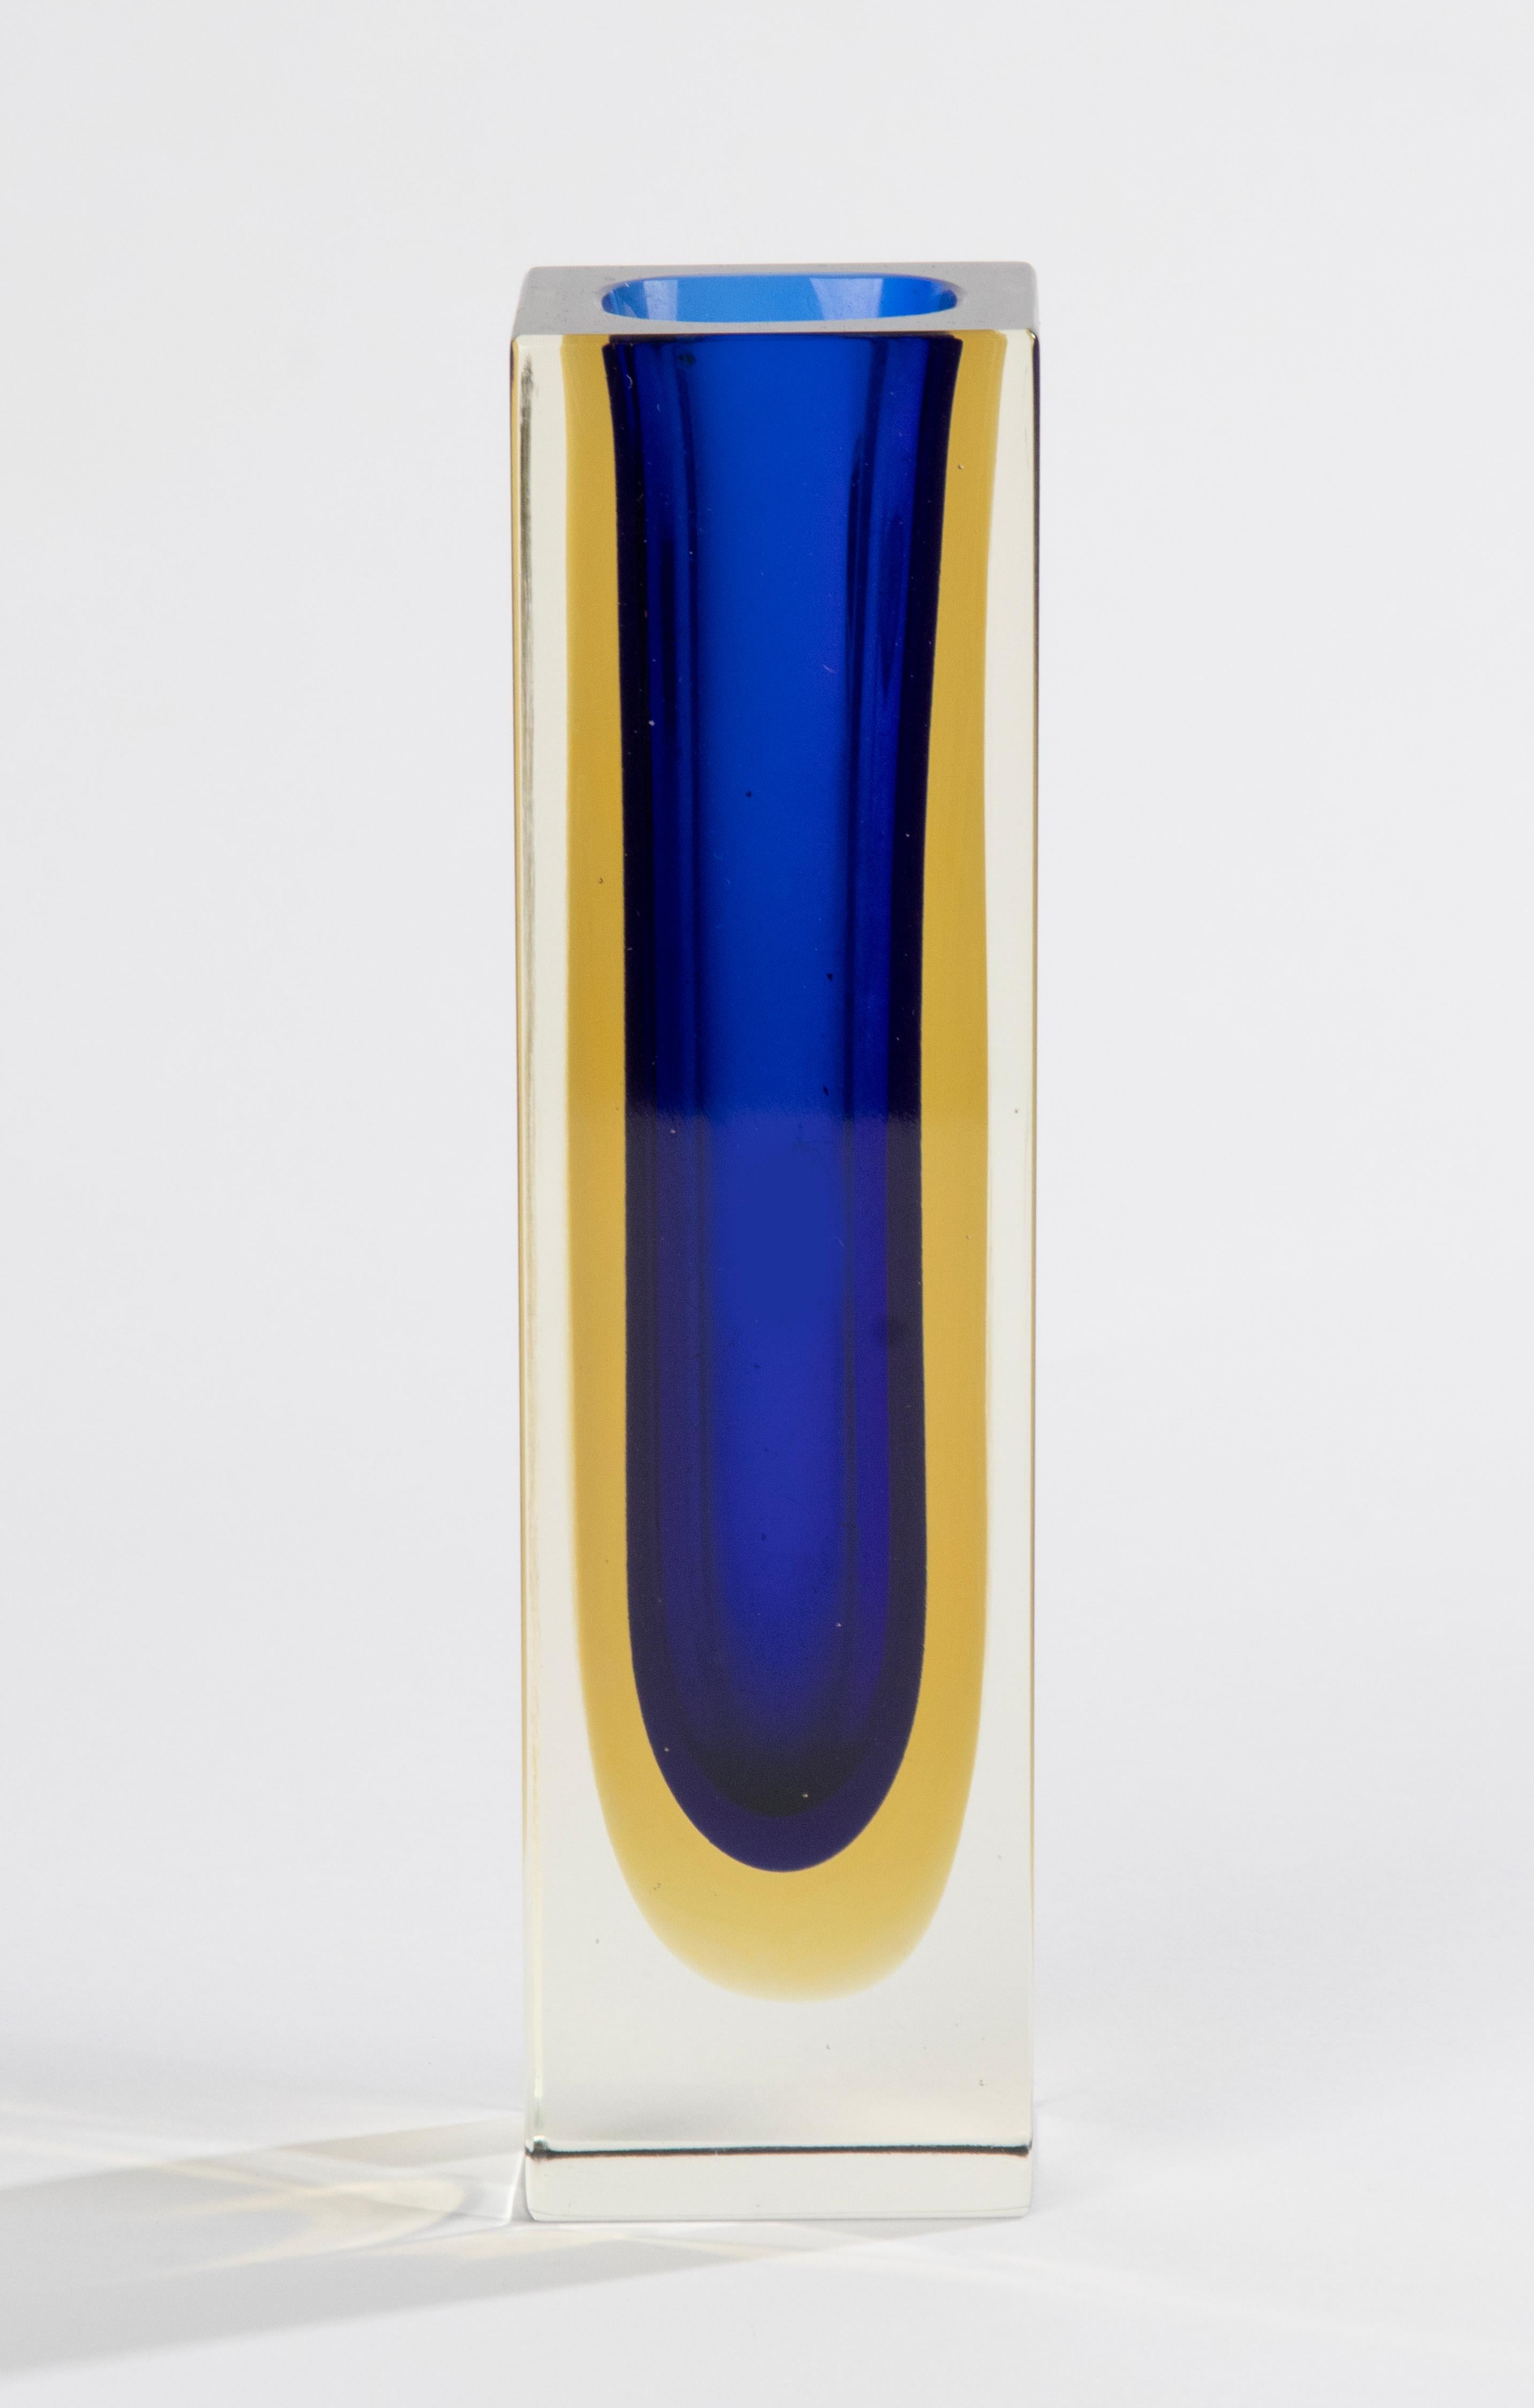 Magnifique vase en verre d'art Sommerso, attribué au designer italien Flavio Poli. 
Le vase est en bon état. Couleurs et qualité magnifiques. 

Dimensions : 5 x 5 cm et 18 cm de hauteur. 
Livraison gratuite dans le monde entier